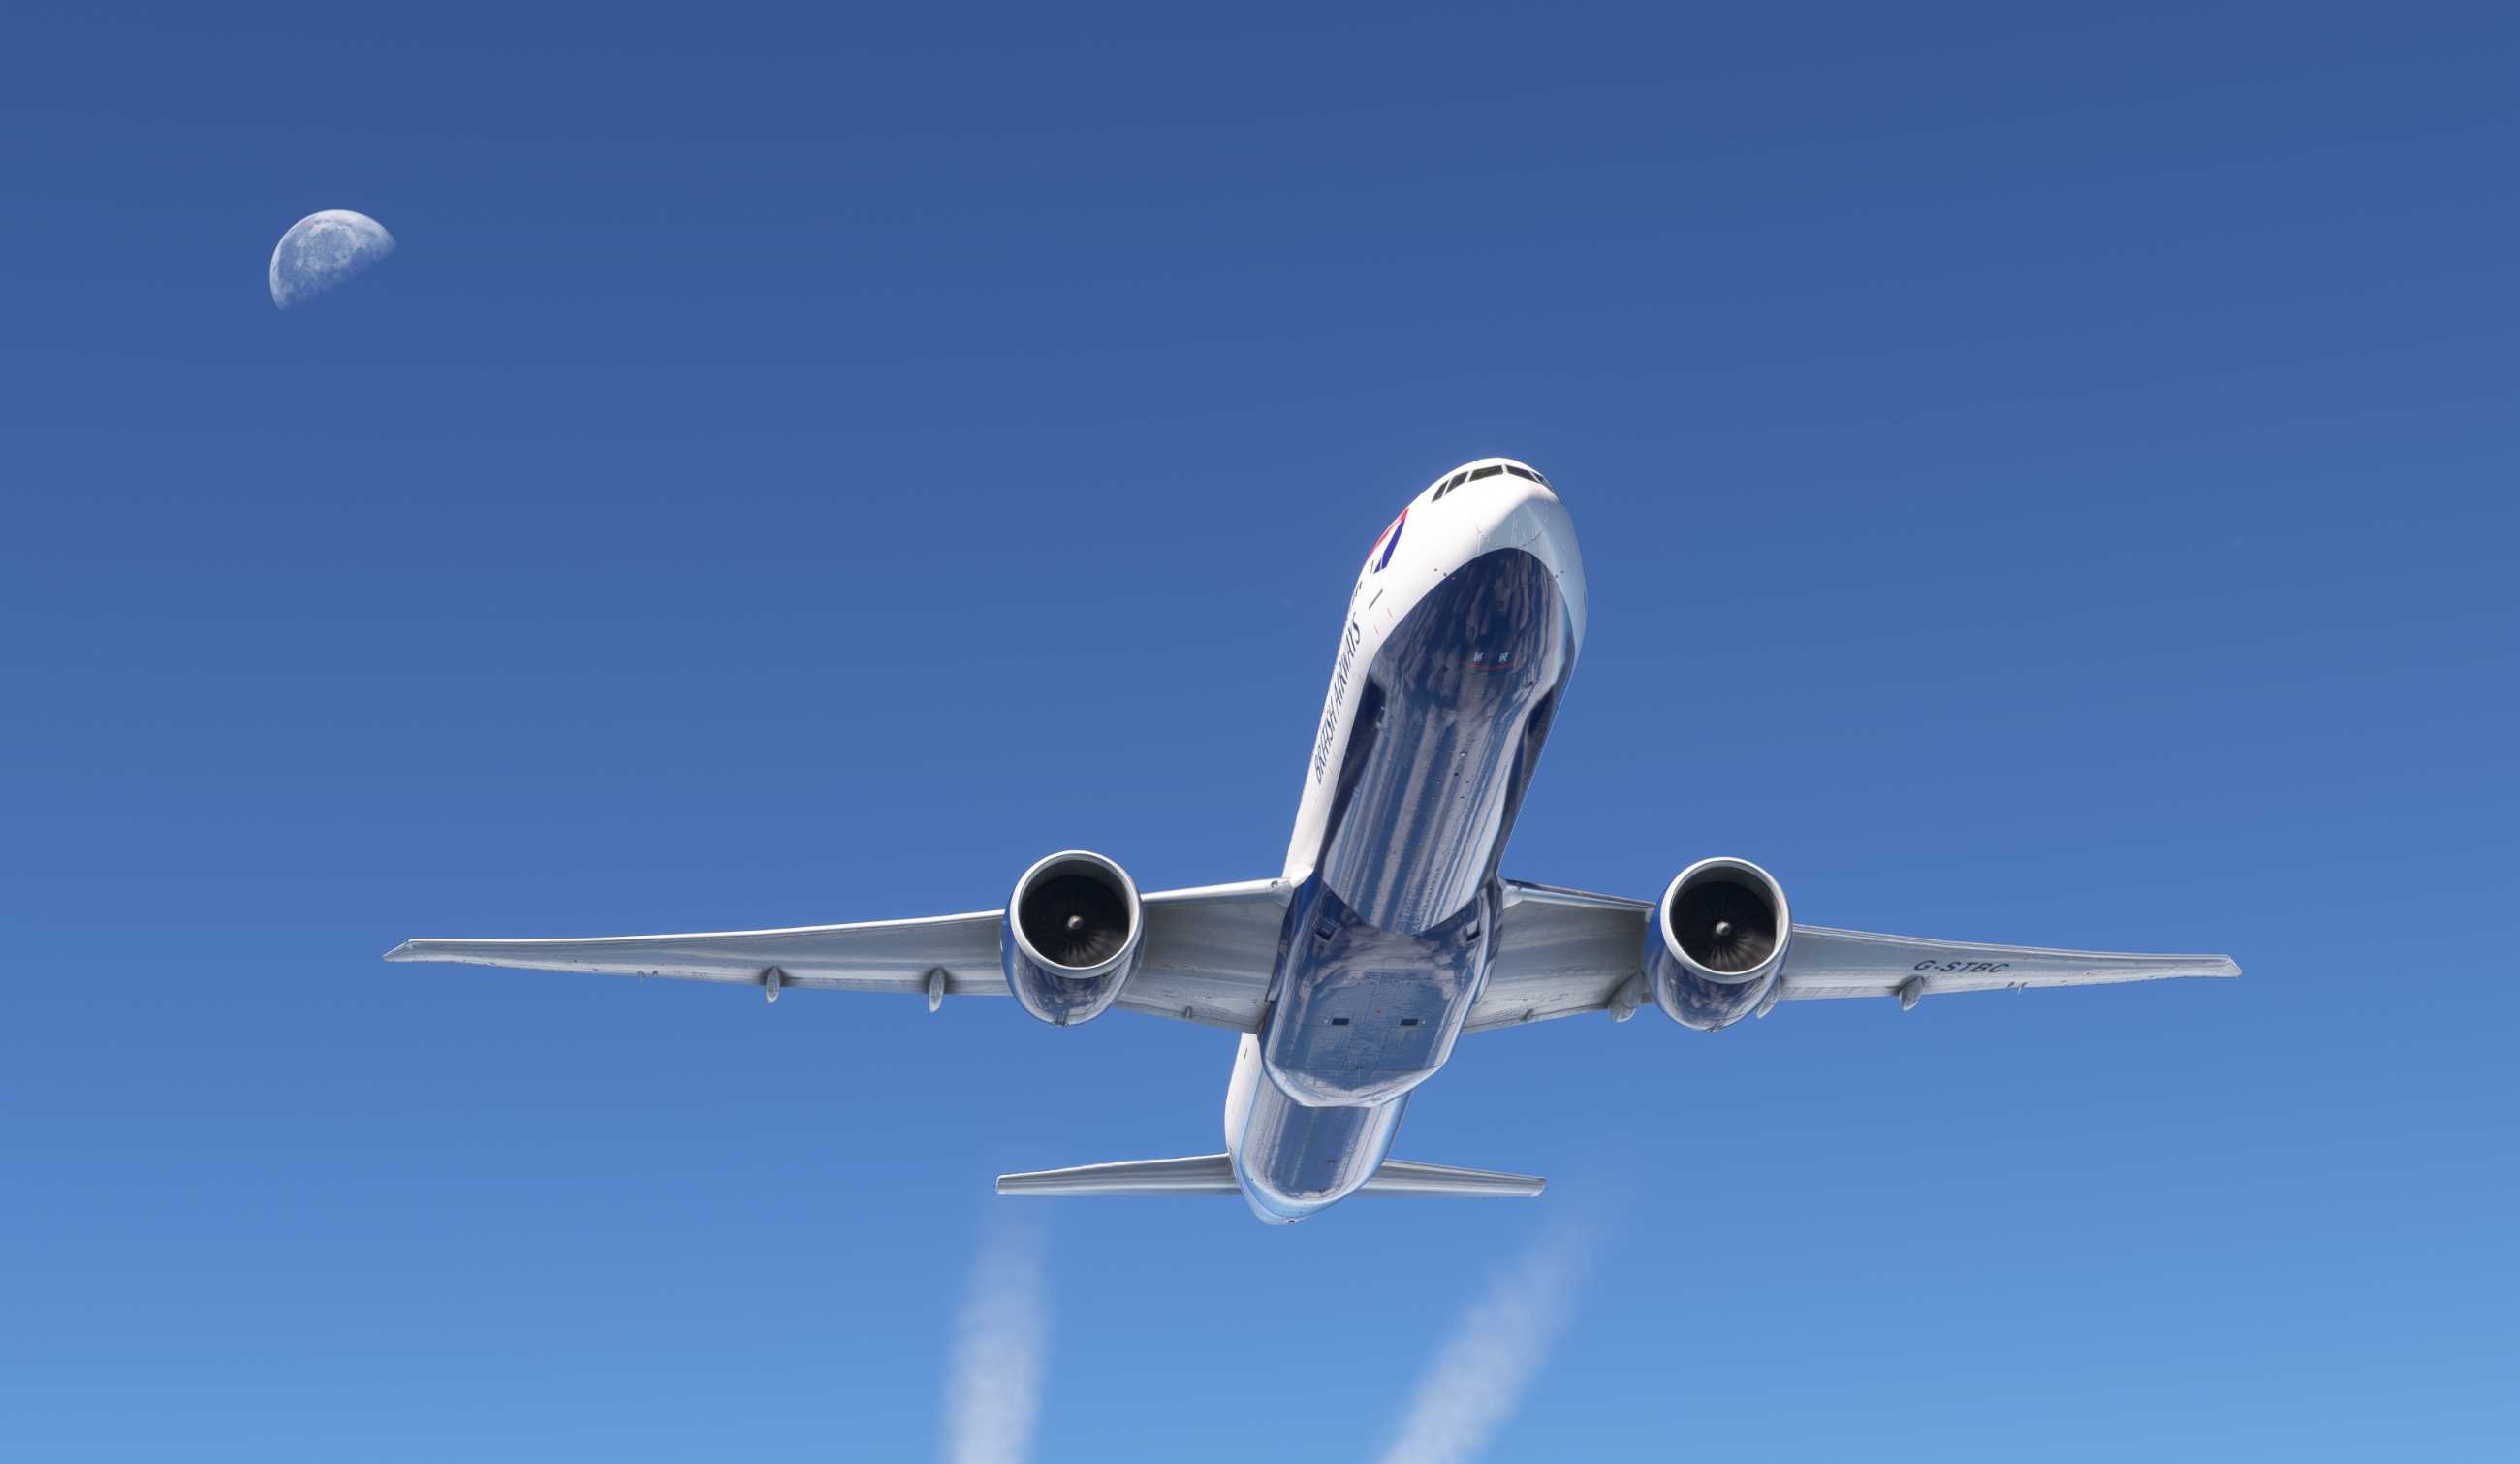 【MSFS】777-300ER KJFK-EGLL-23 